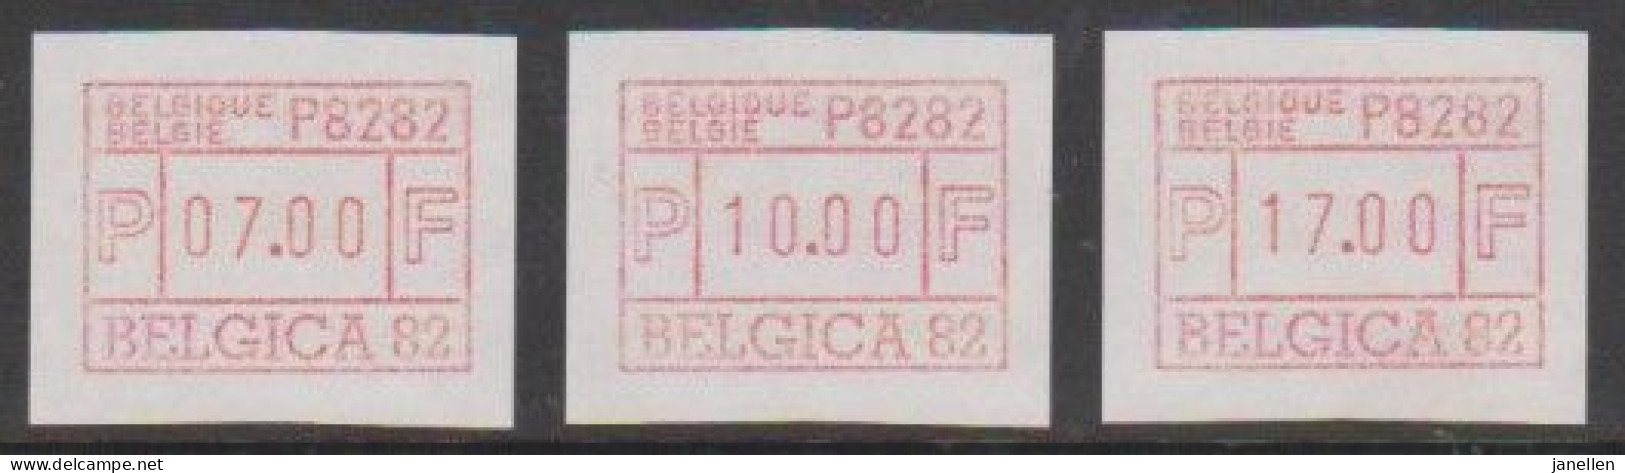 ATM 6A - Belgica 82 - Nuevos